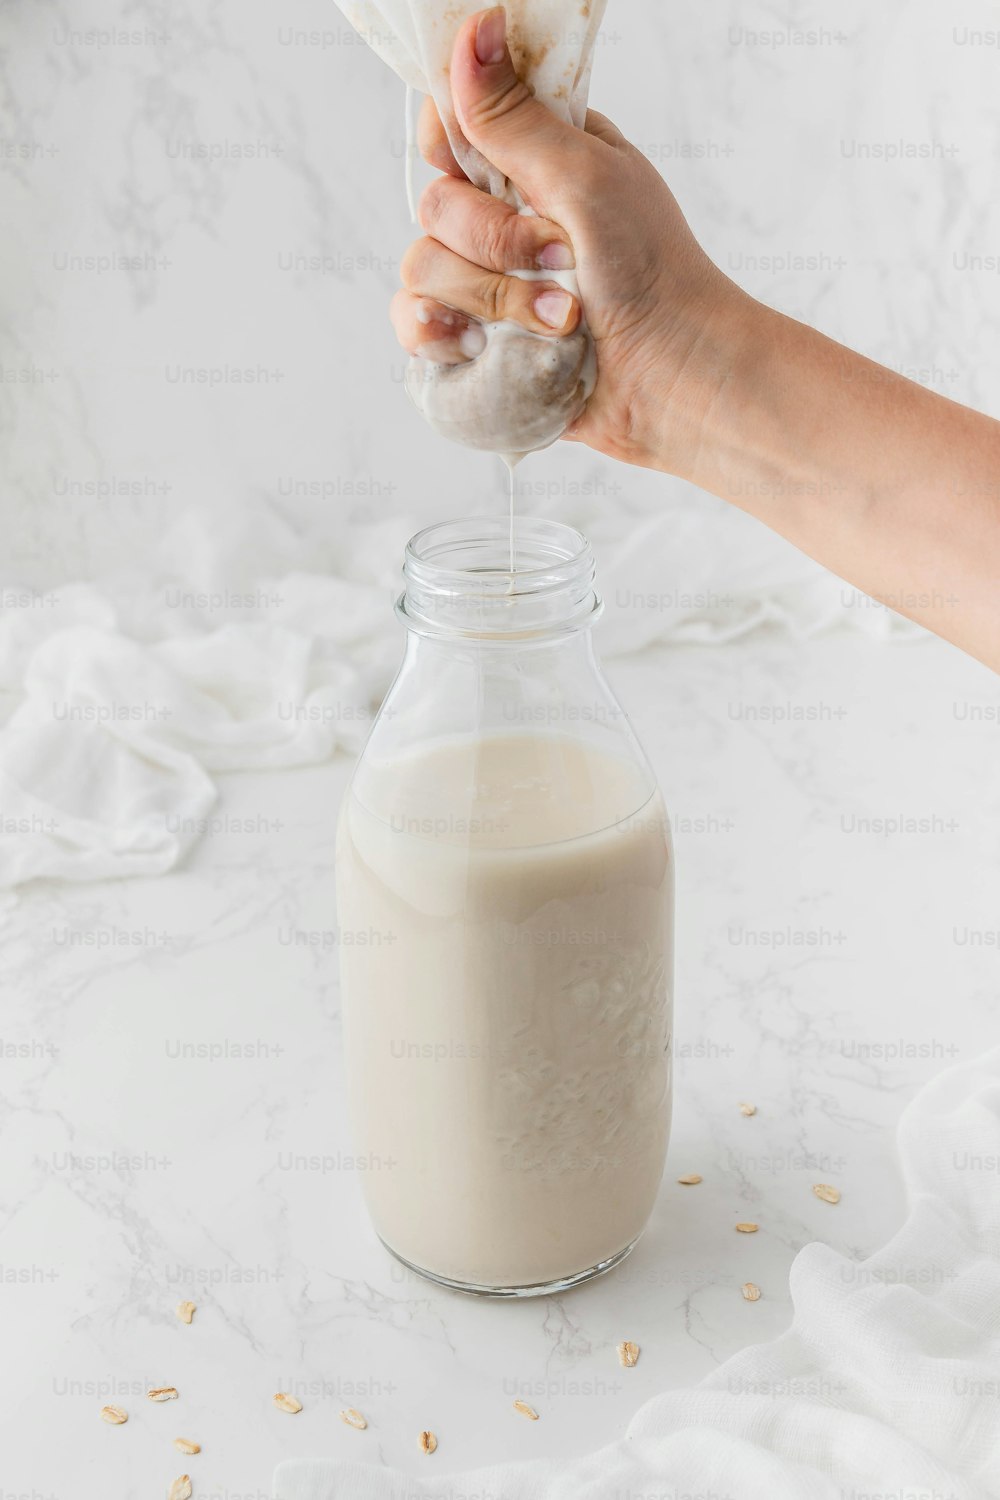 une personne verse du lait dans un bocal en verre